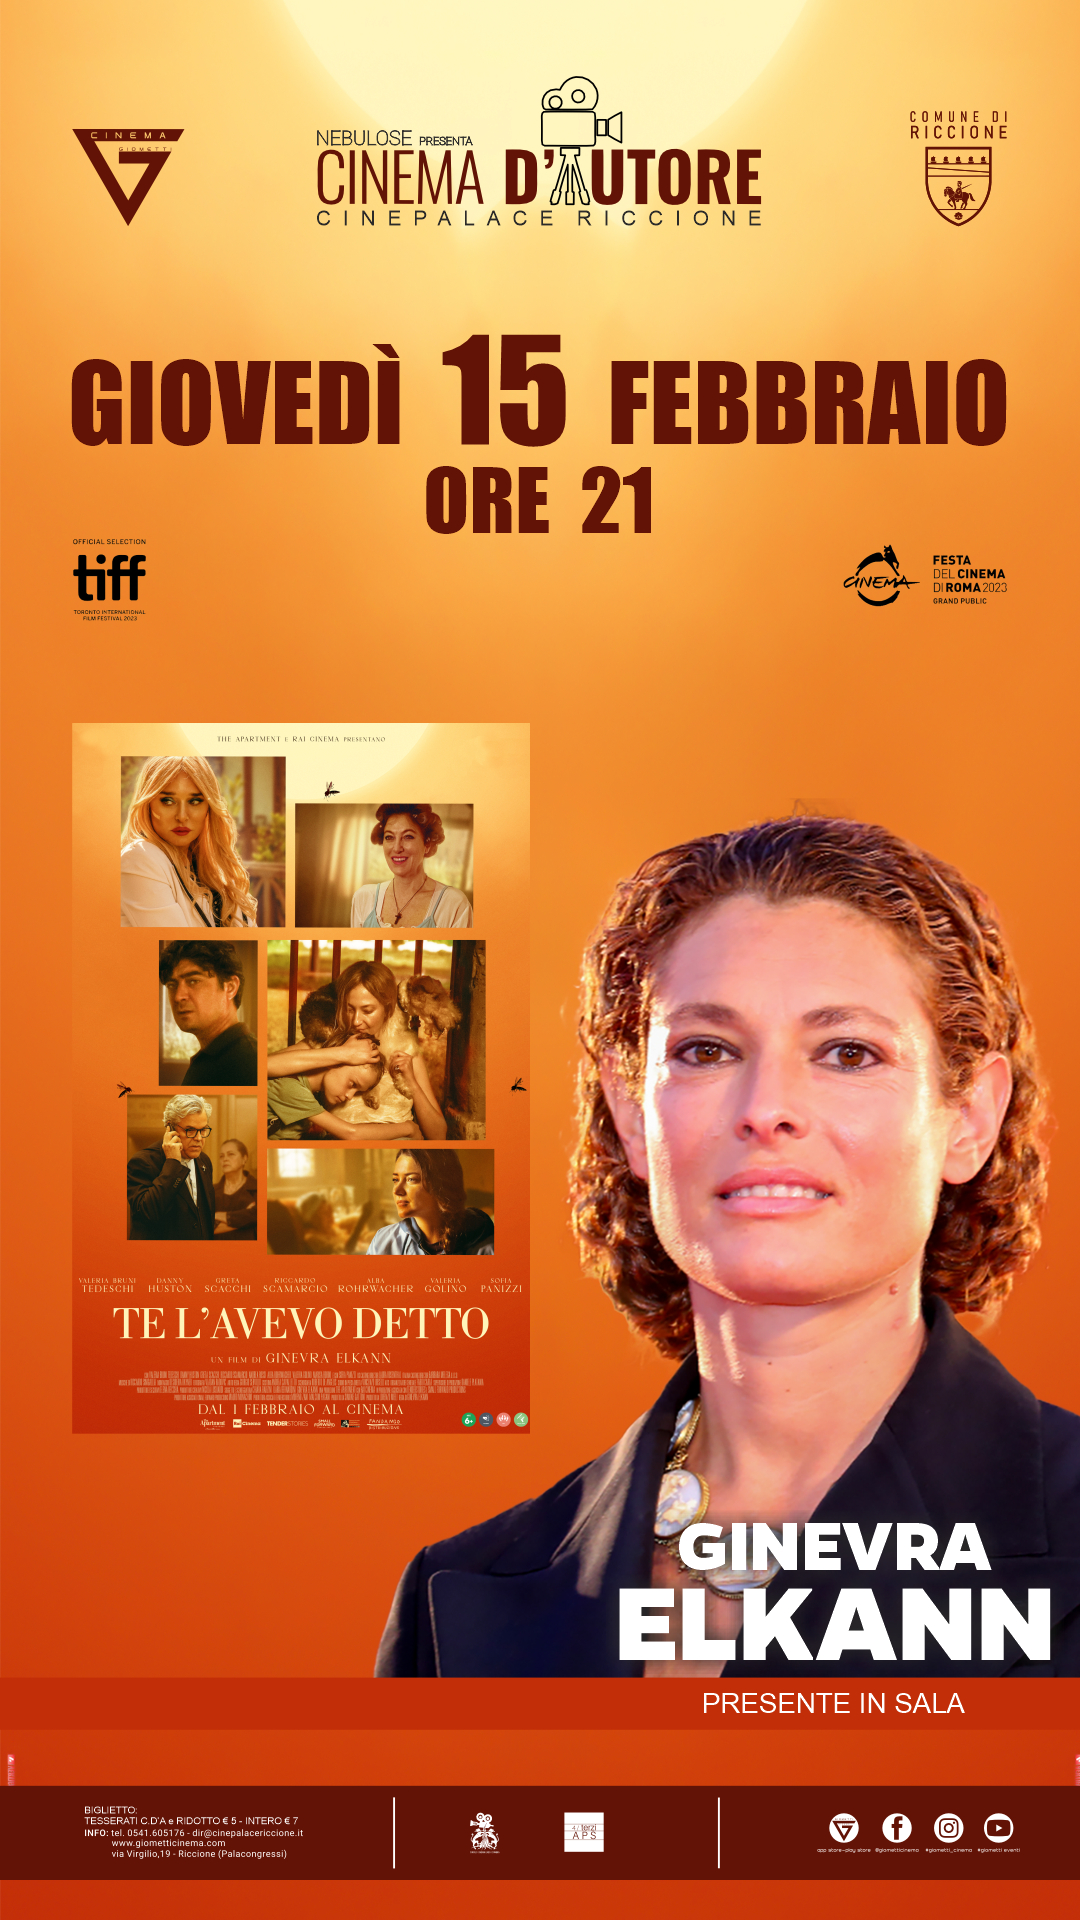 Rassegna “Cinema d’autore”: la regista Ginevra Elkann ospite al Cinepalace alla proiezione del suo film “Te l’avevo detto”